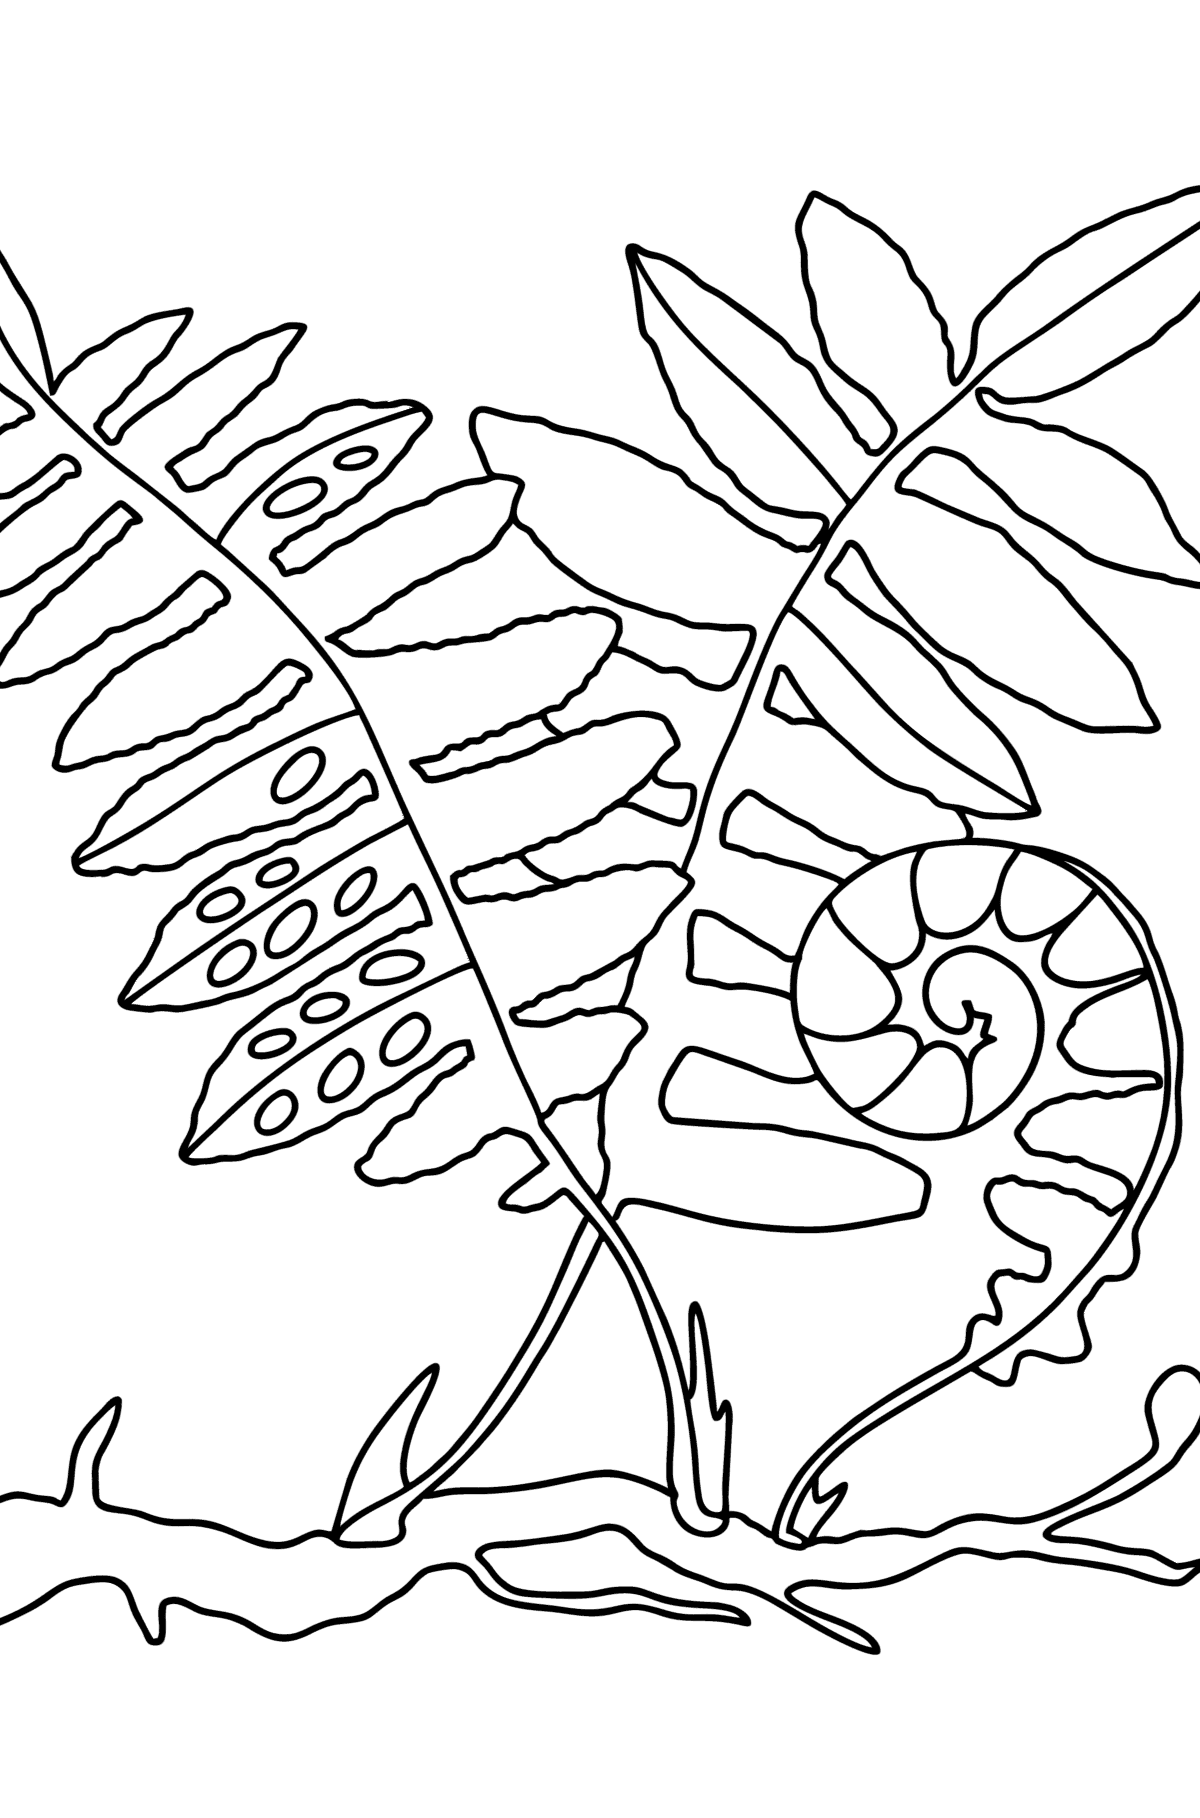 Раскраска Листья папоротника - Картинки для Детей